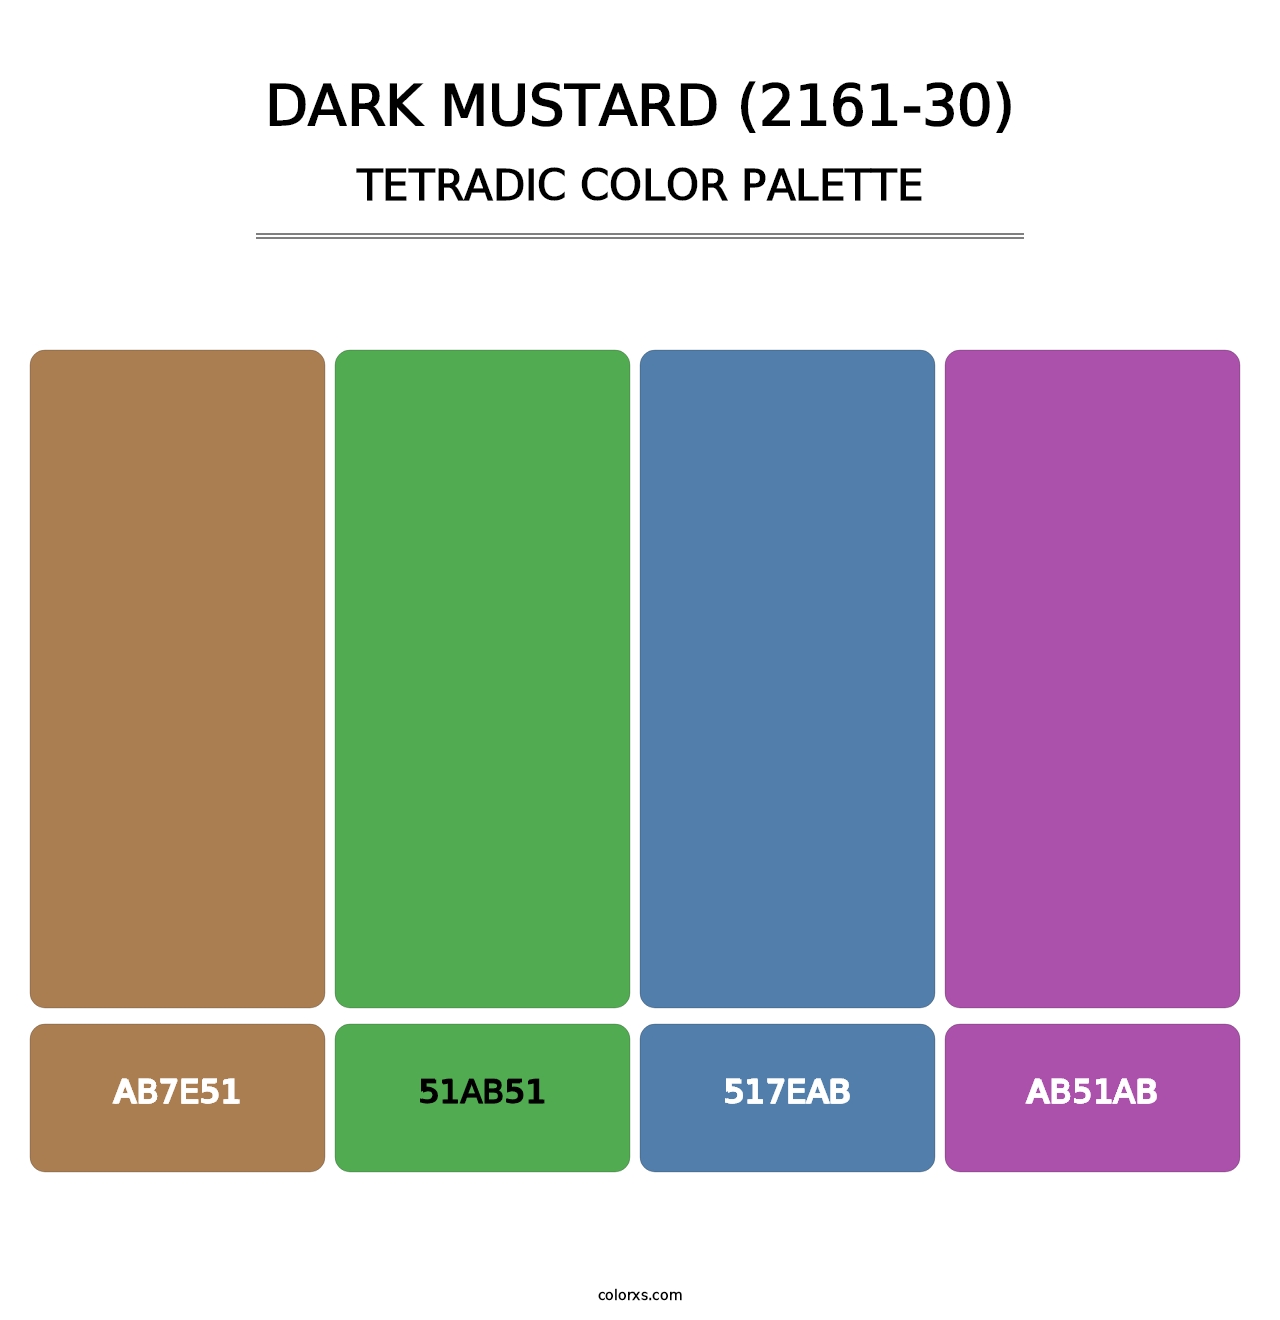 Dark Mustard (2161-30) - Tetradic Color Palette